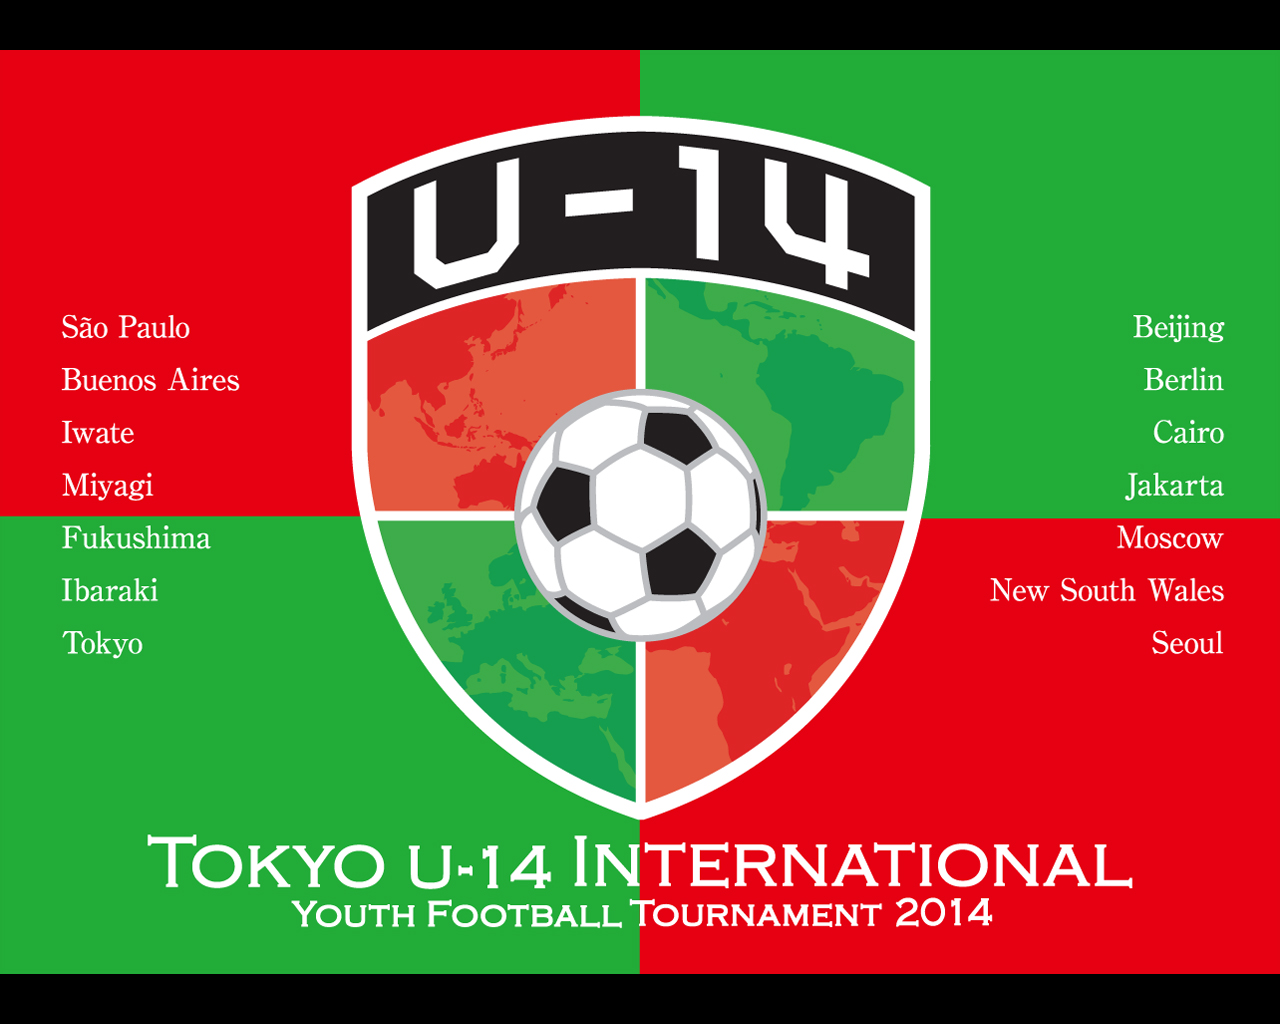 La Ciudad de Buenos Aires participó del Campeonato Juvenil de Fútbol de Tokio